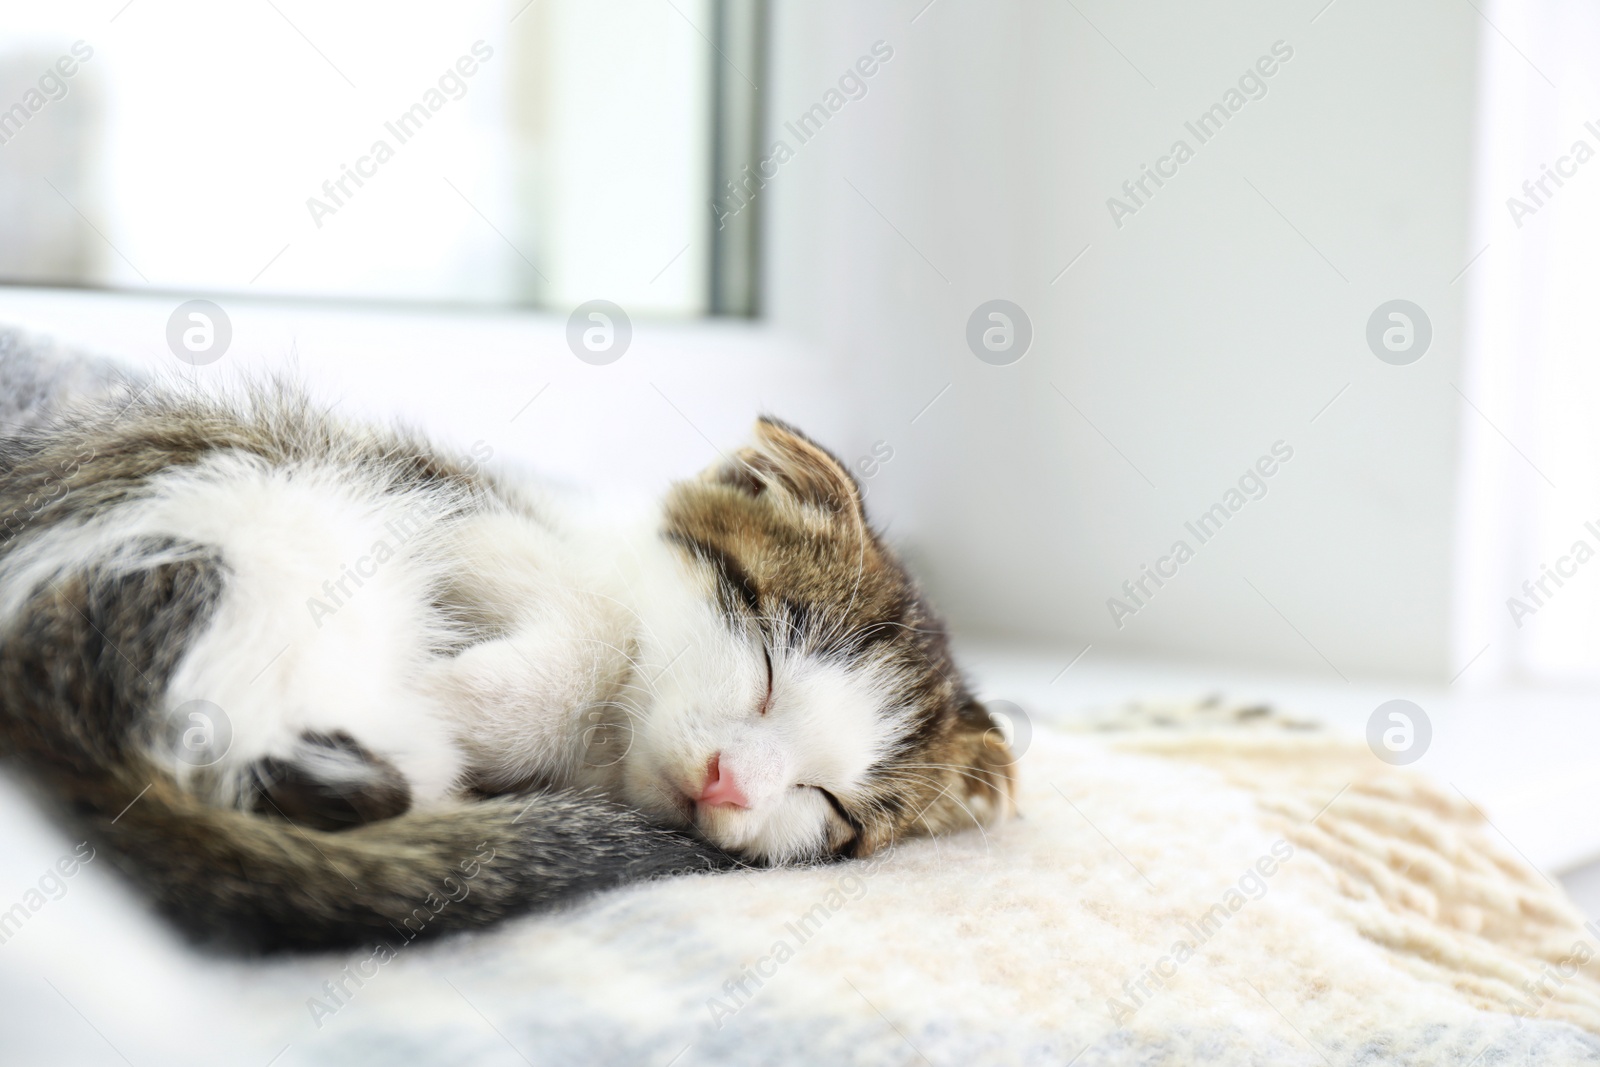 Photo of Adorable little kitten sleeping on blanket near window indoors